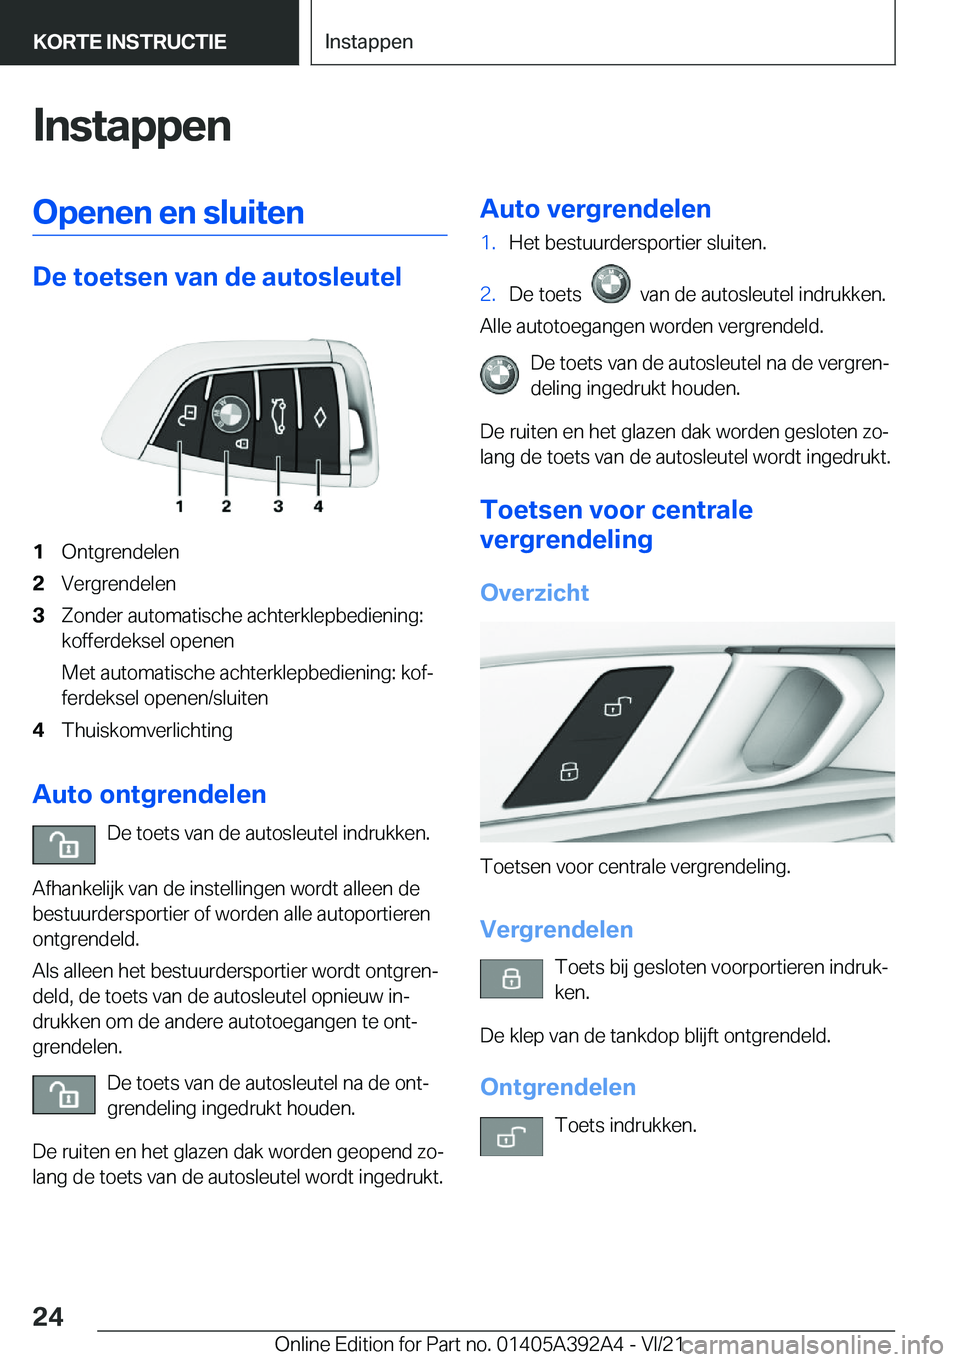 BMW 4 SERIES 2022  Instructieboekjes (in Dutch) �I�n�s�t�a�p�p�e�n�O�p�e�n�e�n��e�n��s�l�u�i�t�e�n
�D�e��t�o�e�t�s�e�n��v�a�n��d�e��a�u�t�o�s�l�e�u�t�e�l
�1�O�n�t�g�r�e�n�d�e�l�e�n�2�V�e�r�g�r�e�n�d�e�l�e�n�3�Z�o�n�d�e�r��a�u�t�o�m�a�t�i�s�c